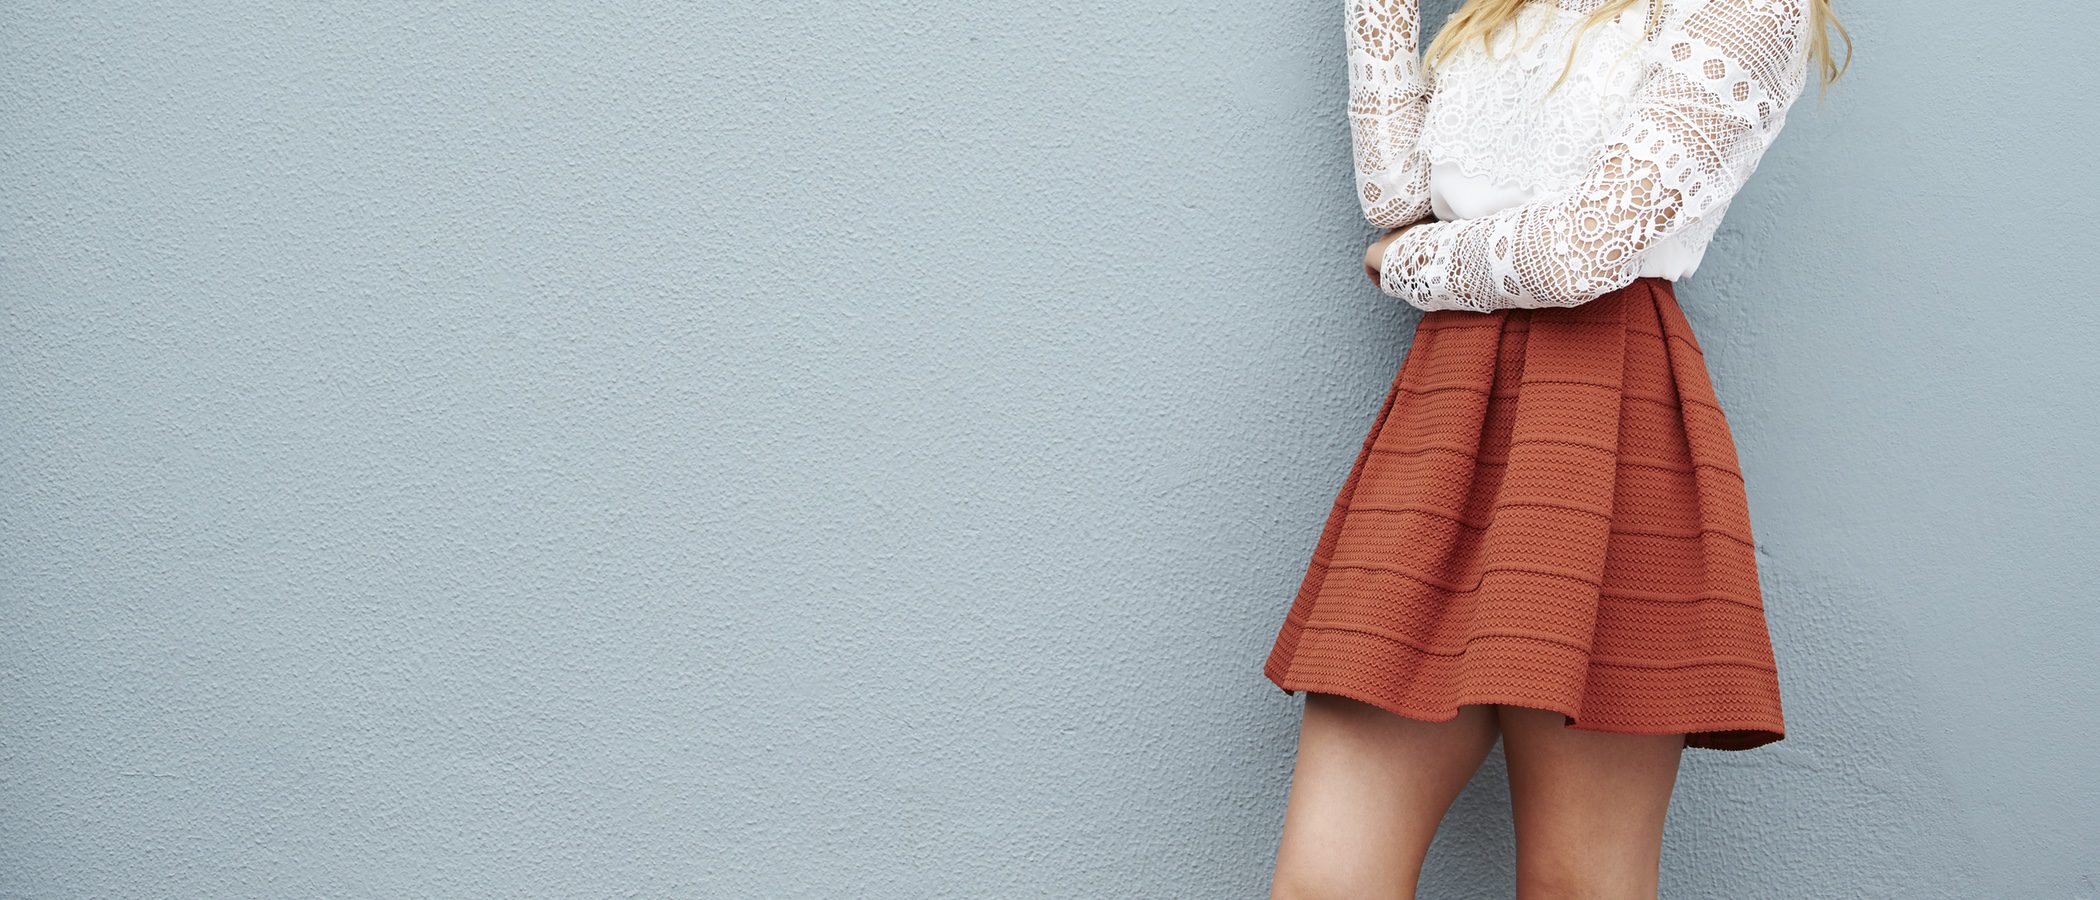 Minifalda: guía de estilo